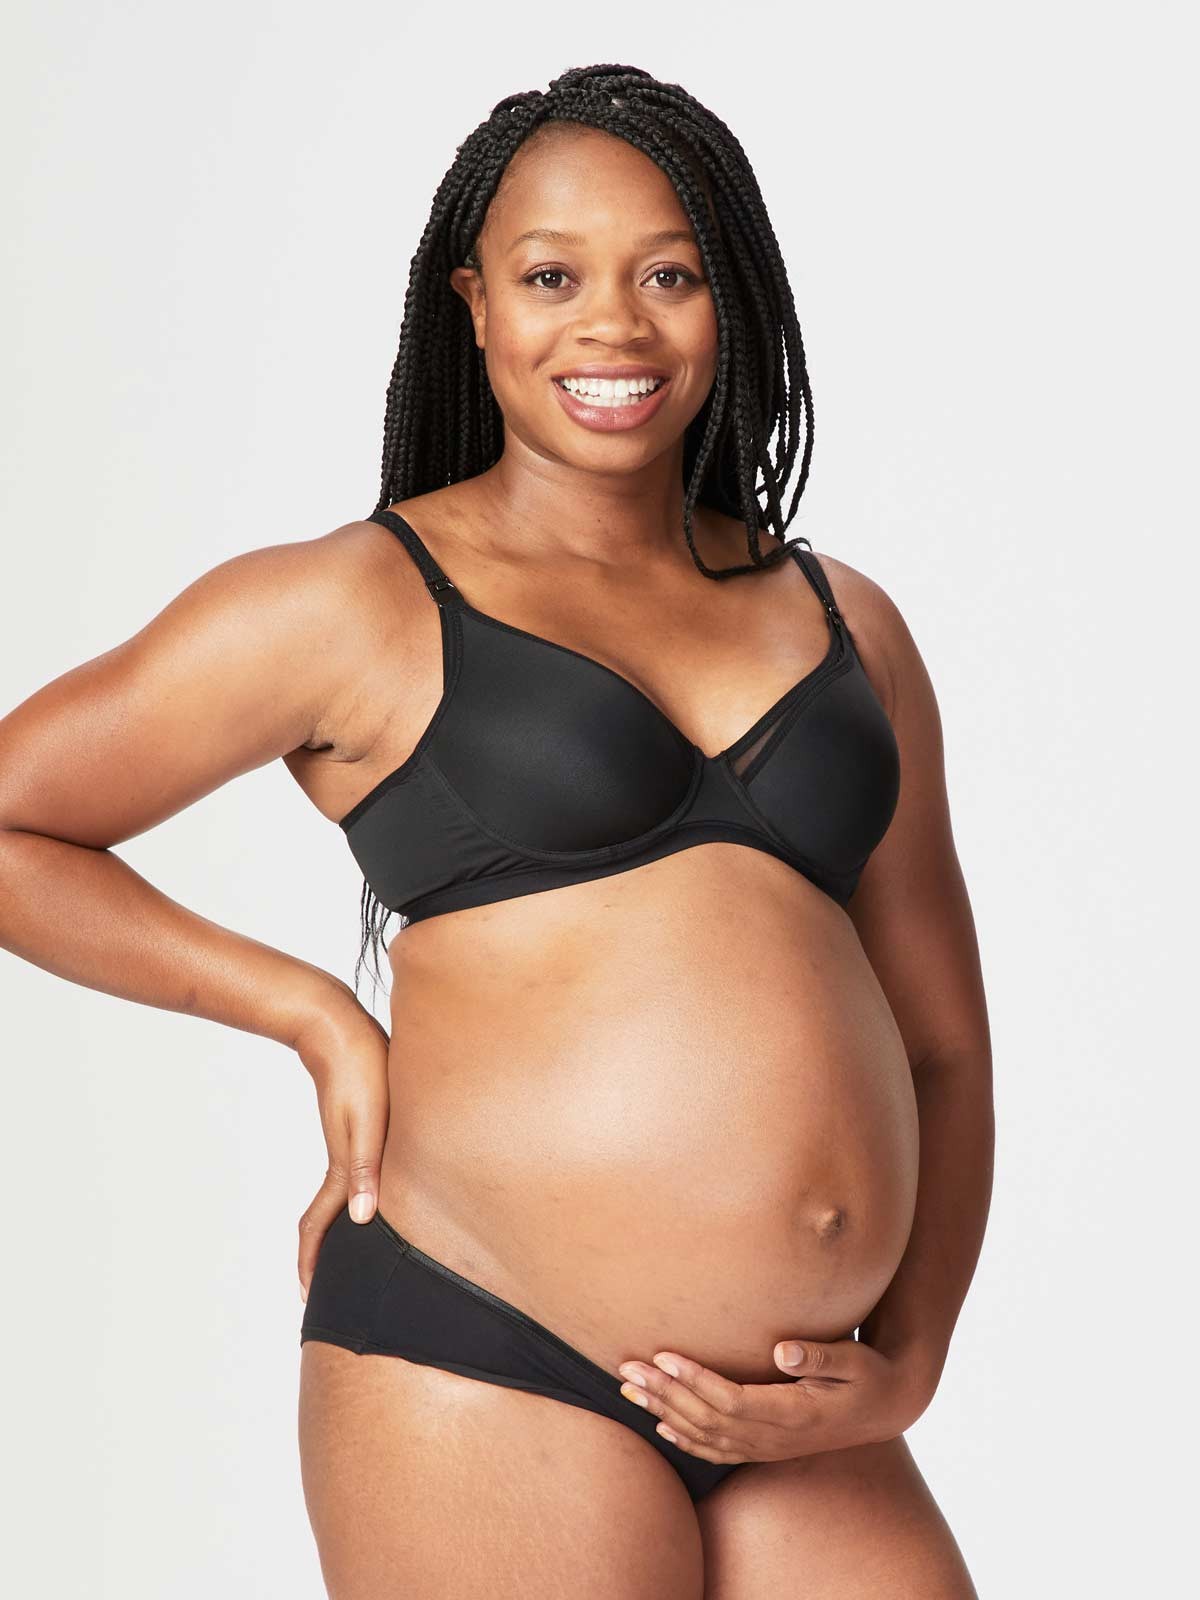 Fashion Women Postpartum Shapewear Wirefree Nursing Bra Cotton Breastfeeding  Underwear Vest Maternity Clothes Pregnancy Tank Top @ Best Price Online